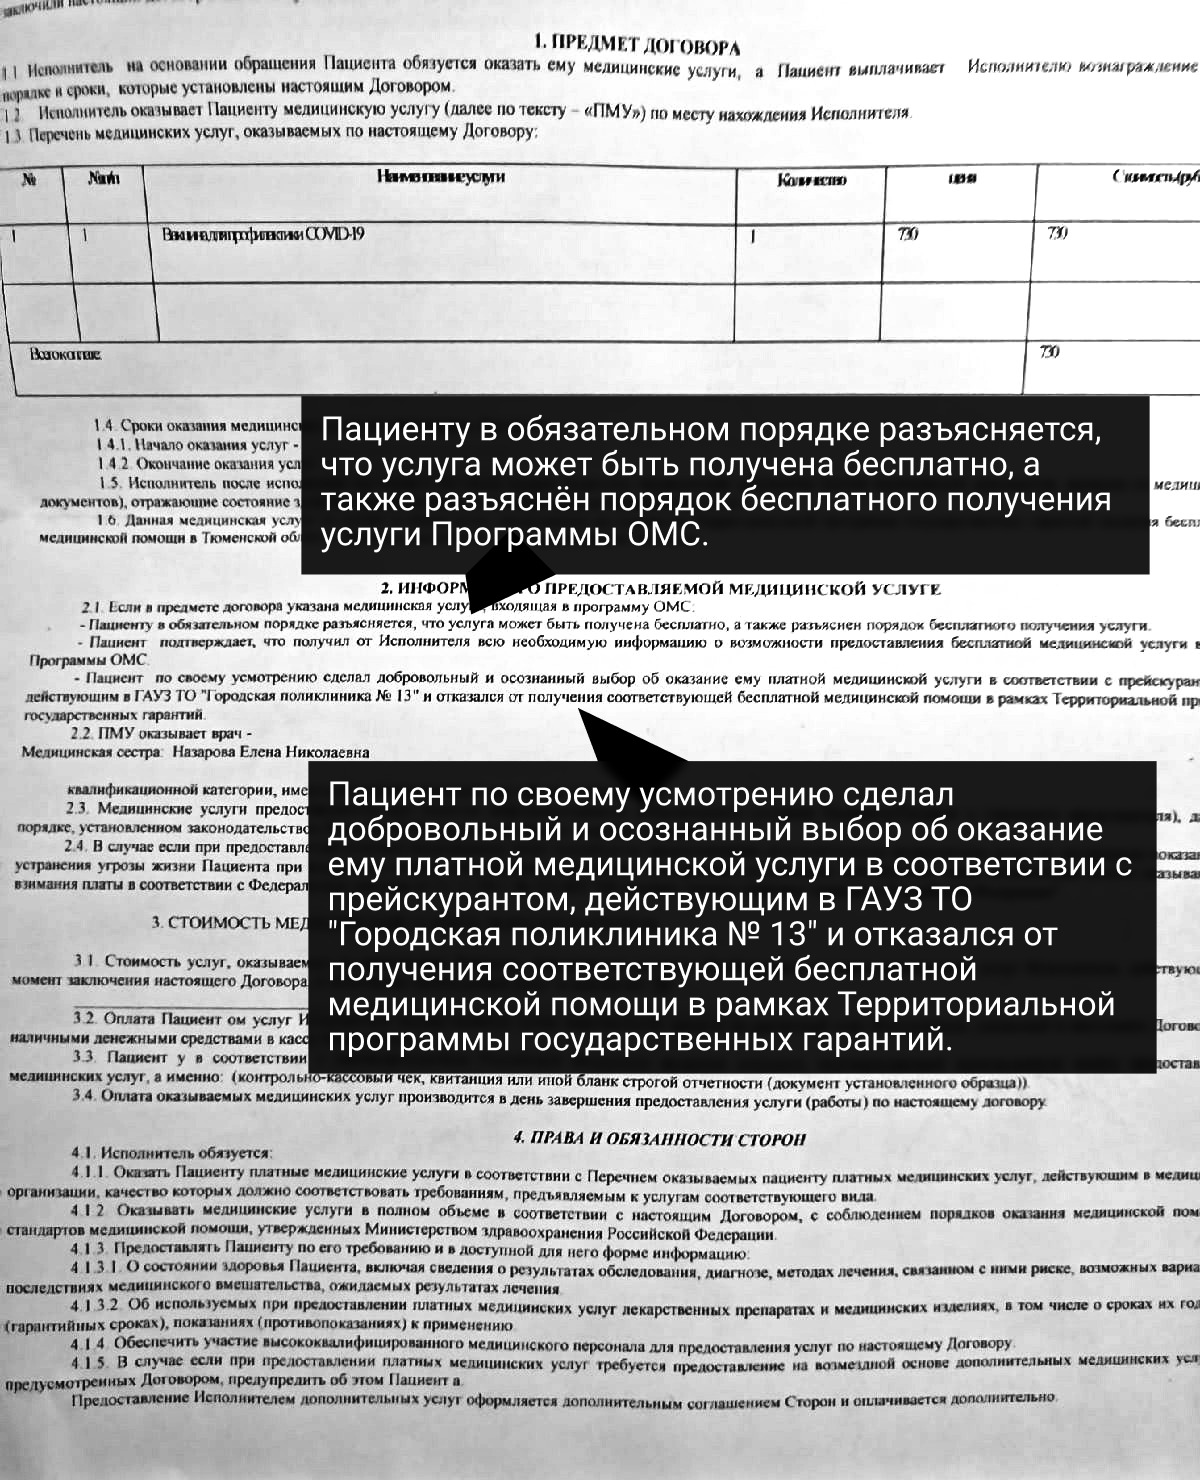 Договор, который подписал тюменец при оплате «Спутника Лайт» в государственной поликлинике